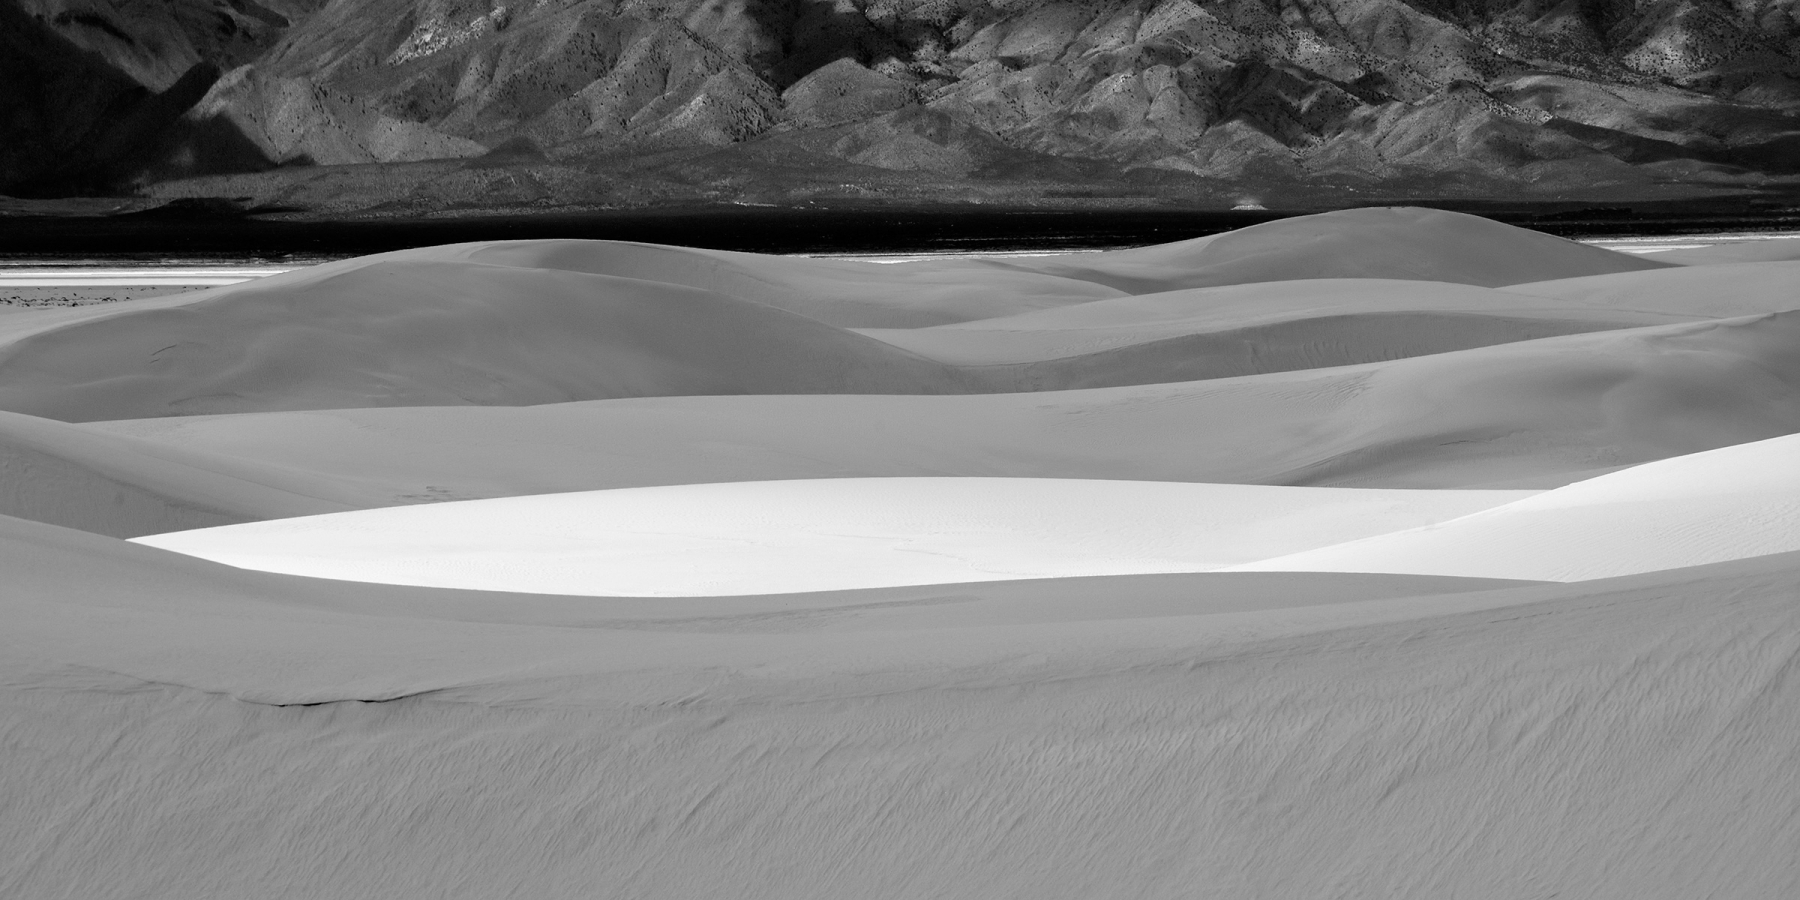 White Sands National Park (Nouveau Mexique, USA) - Plans successifs de dunes de sable blanc avec jeux d'ombre et de lumière (photo noir & blanc)